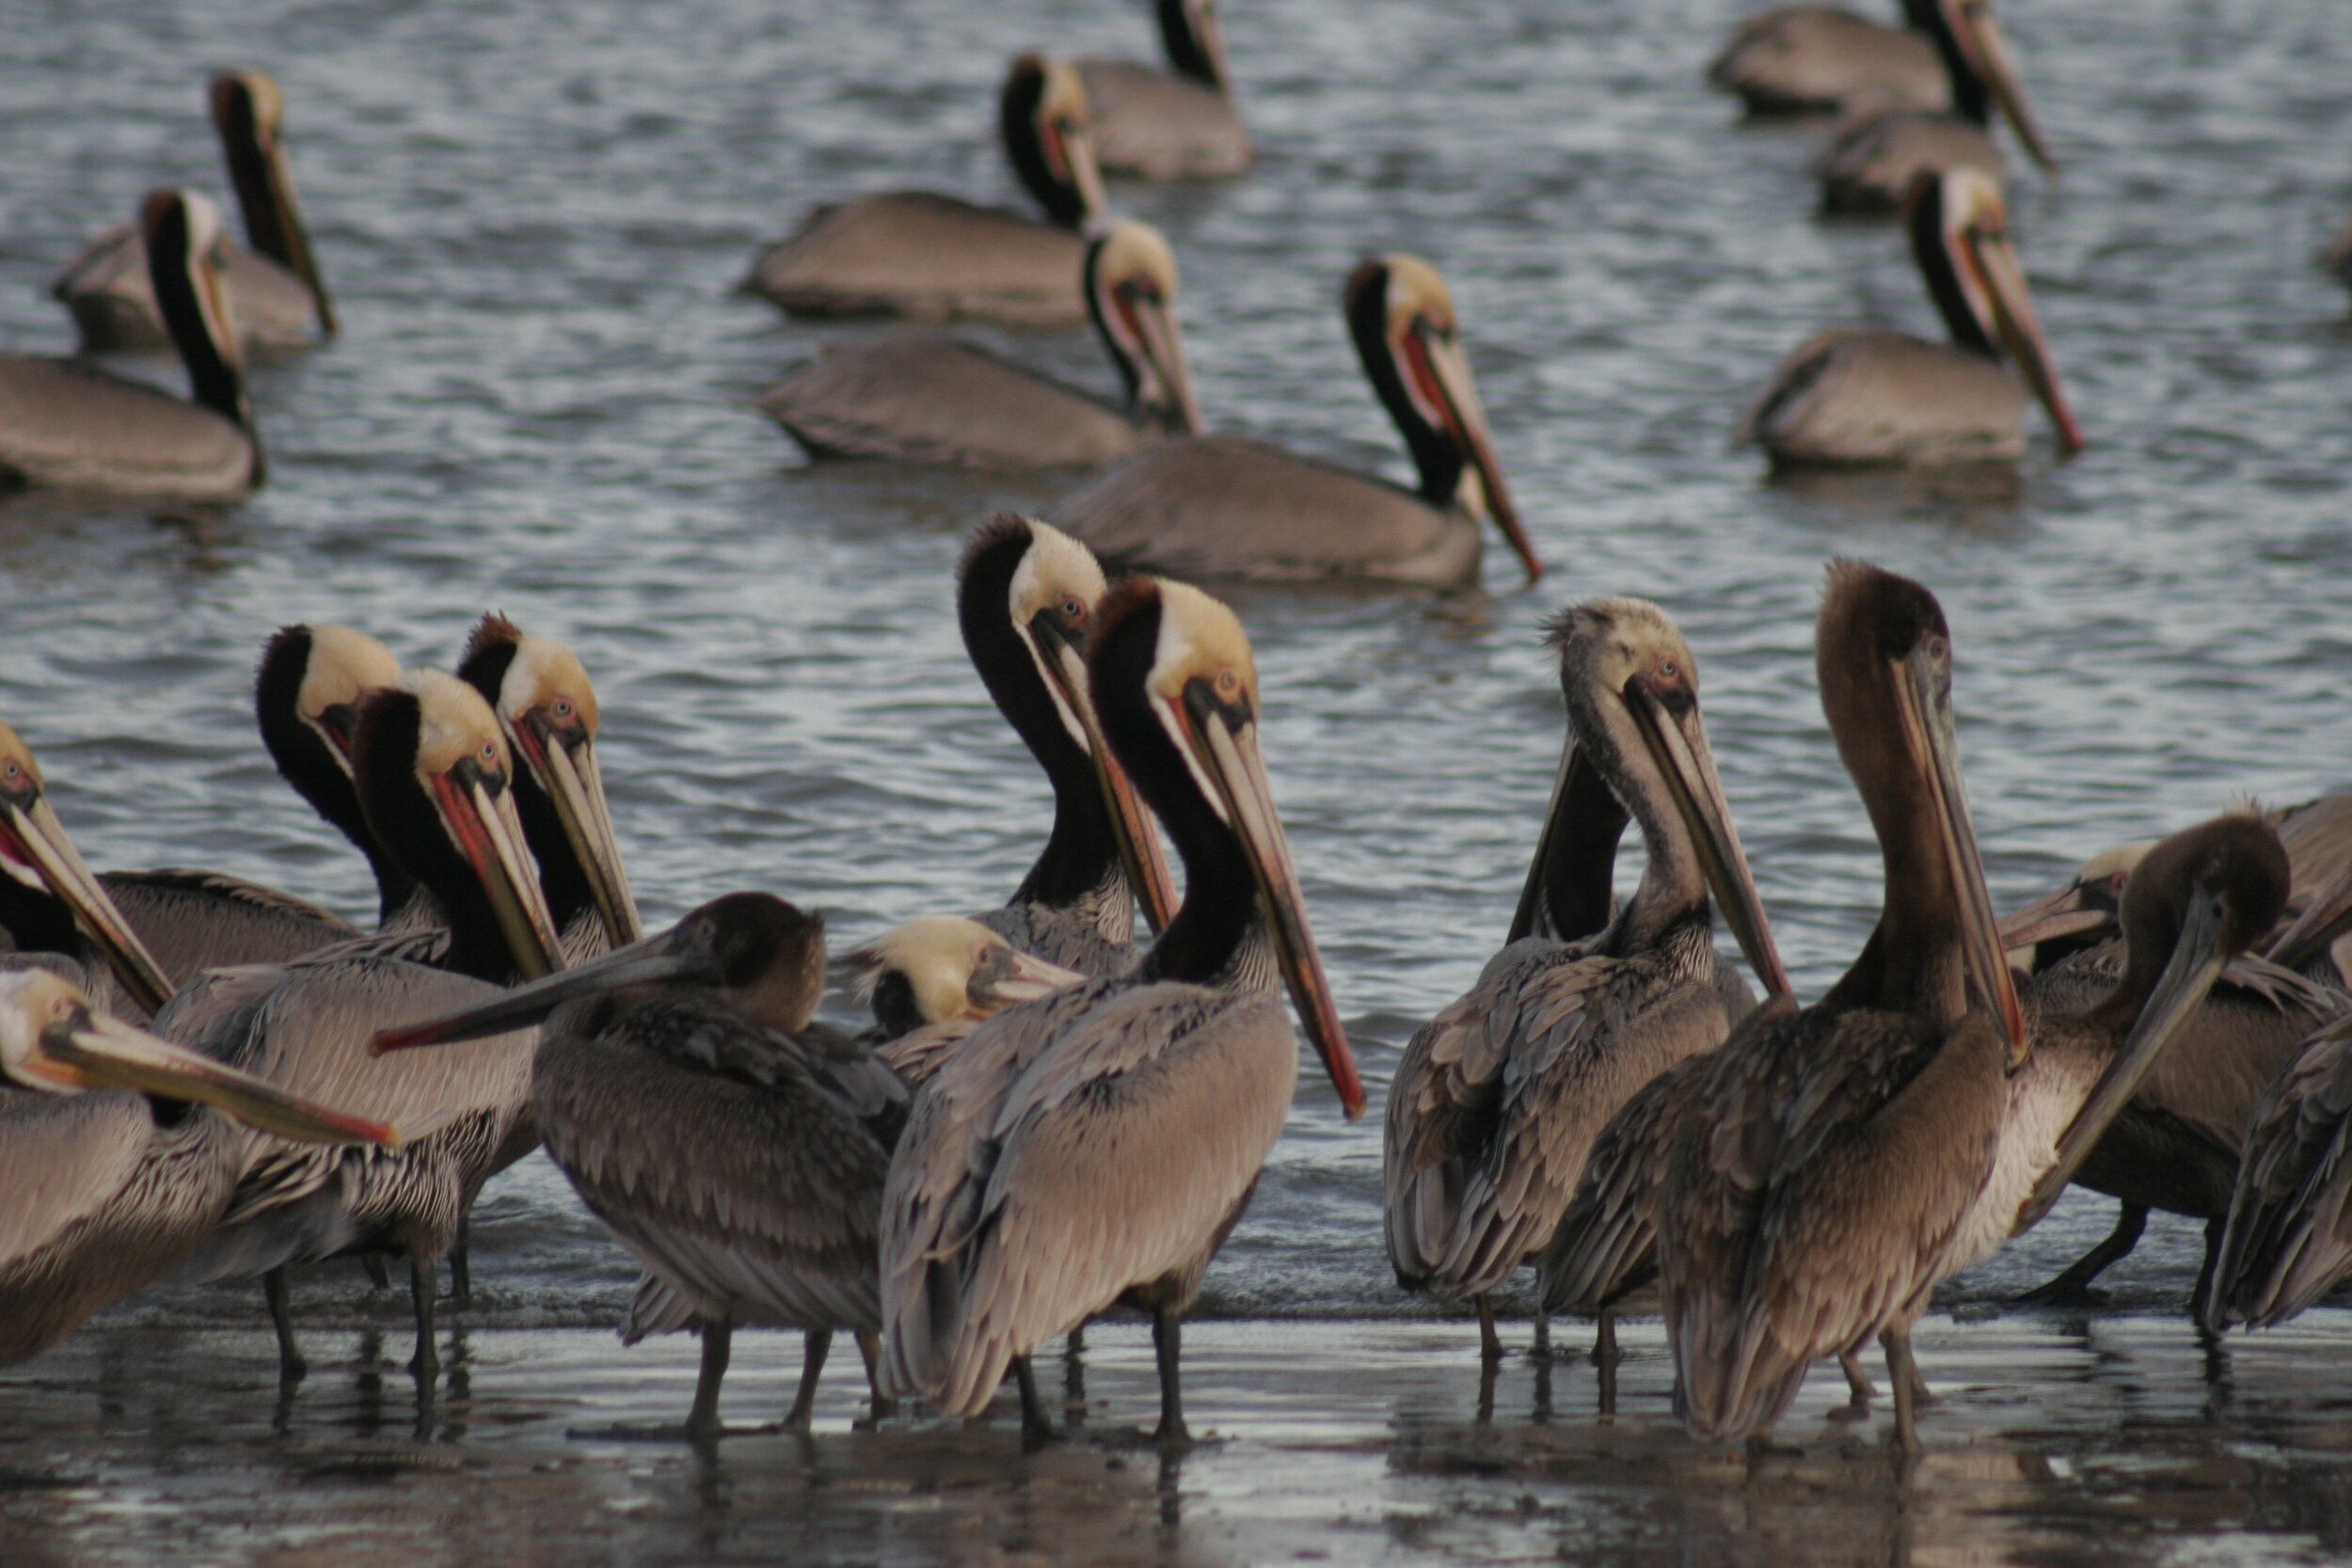 Pelicans - Santa Barbara, CA